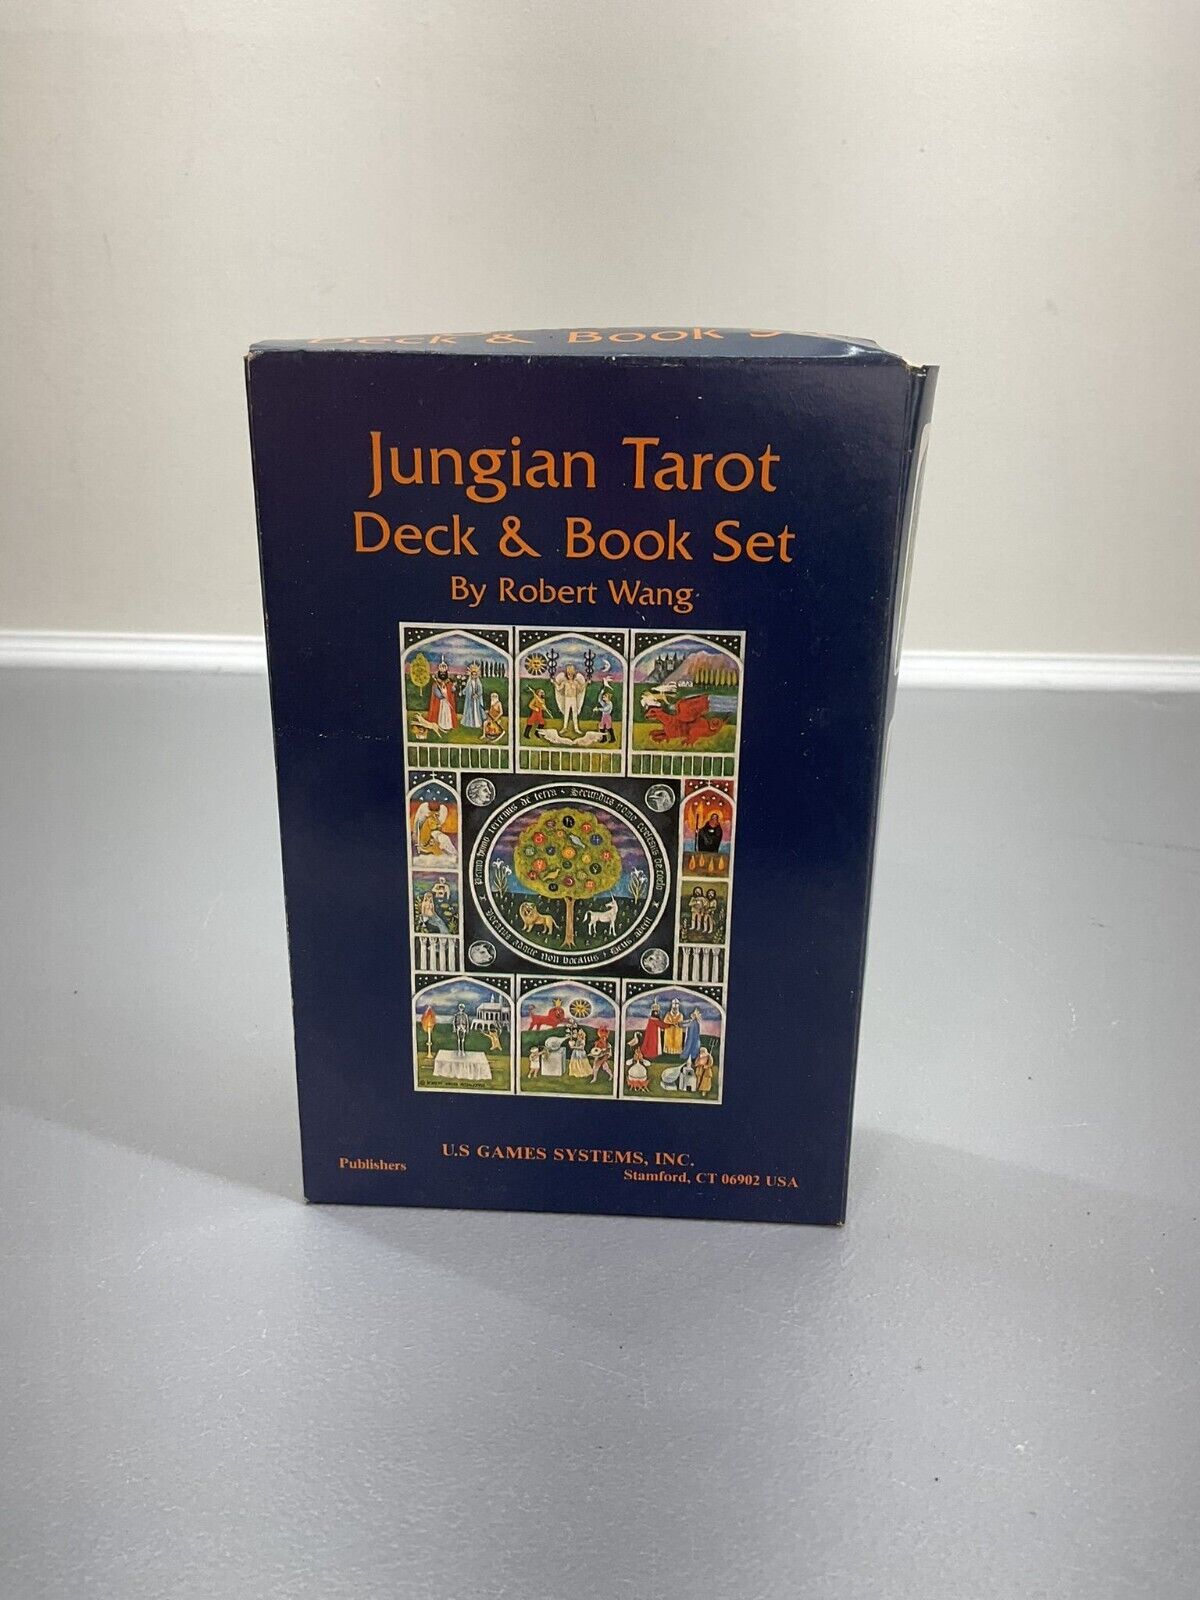 Vintage 1992 The Jungian Tarot Deck by Robert Wang Tarot Card Collection